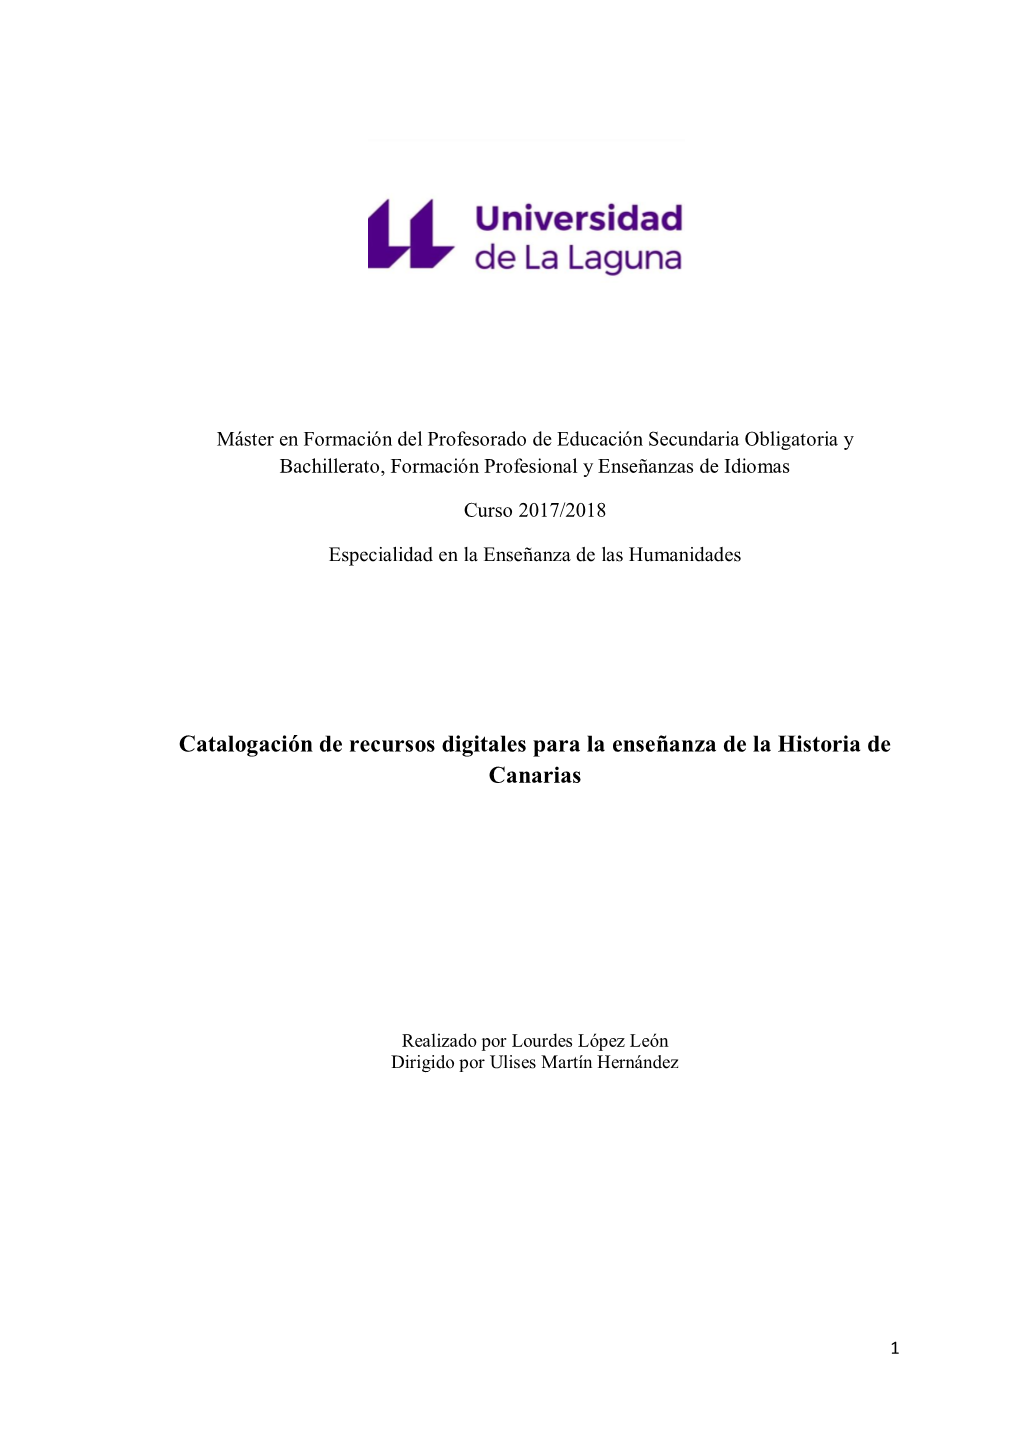 Catalogación De Recursos Digitales Para La Enseñanza De La Historia De Canarias